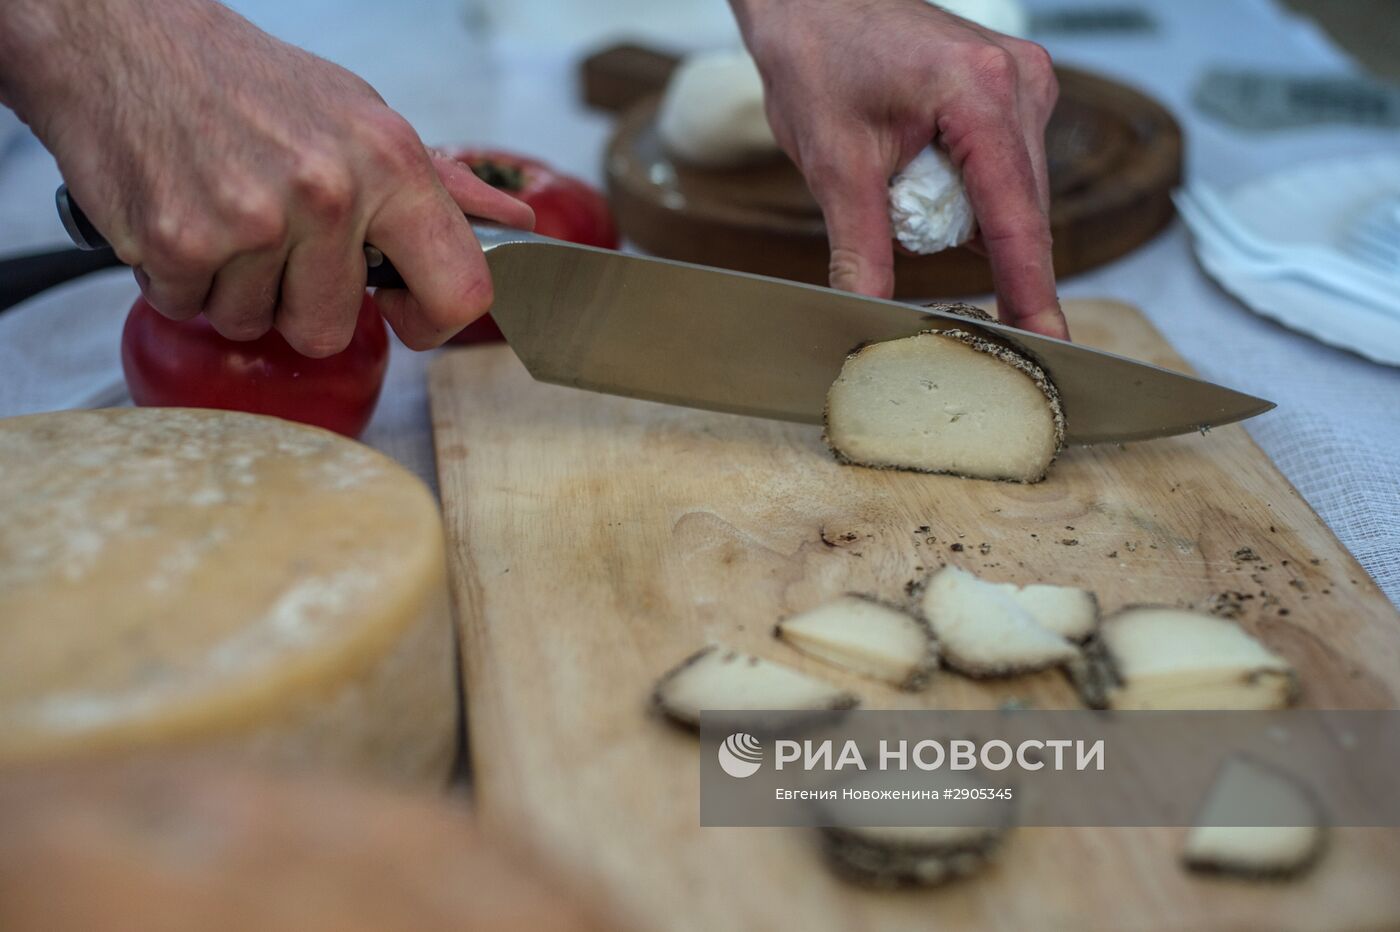 Сырный фестиваль в Московской области